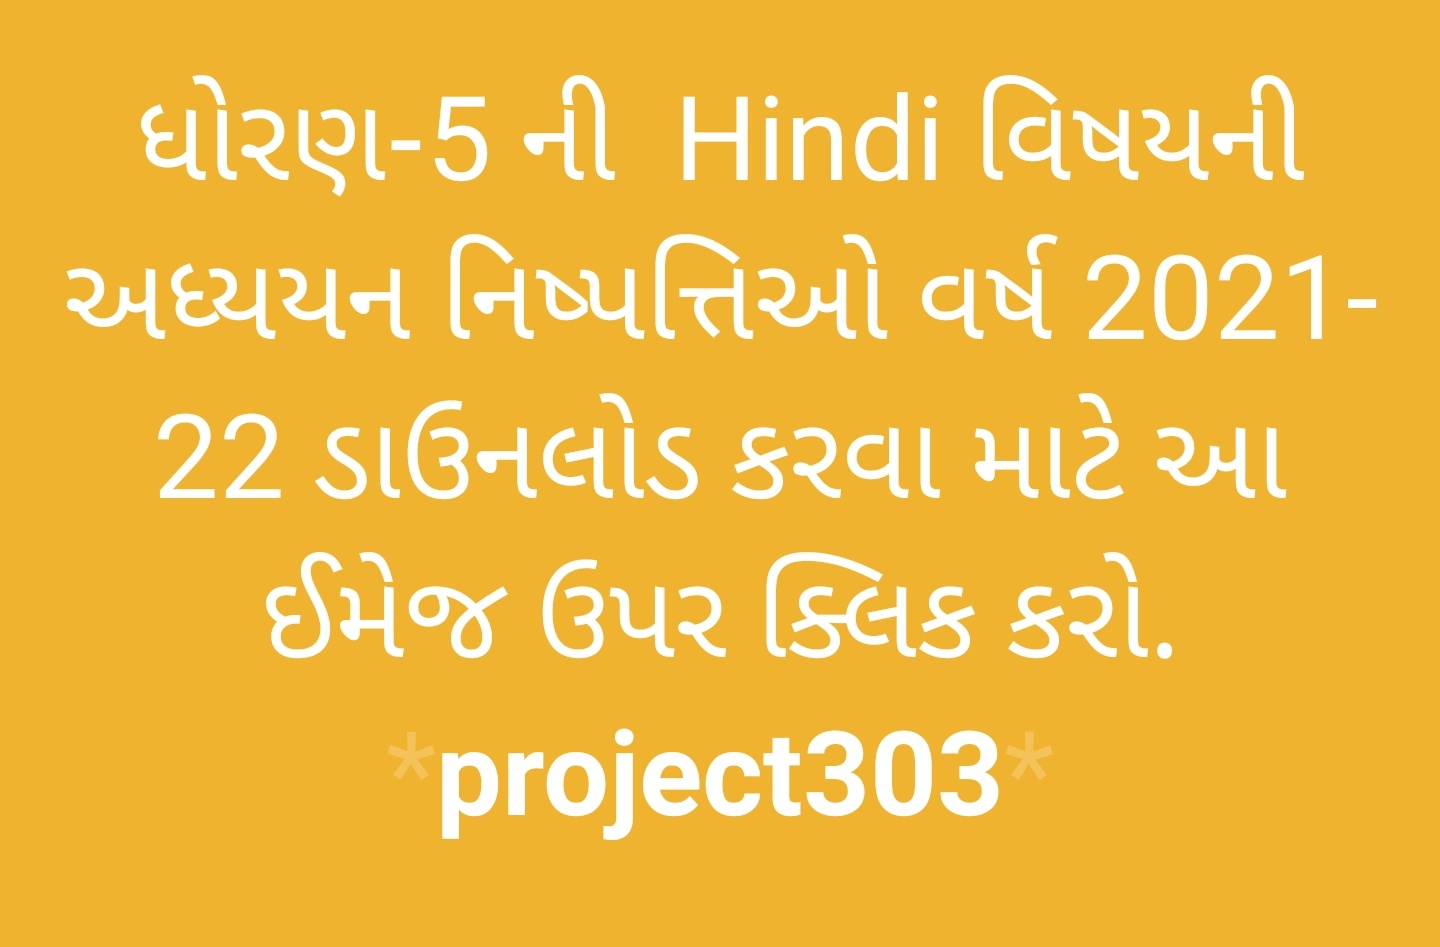 https://project303.blogspot.com/2021/06/std-5-nishpatti-all.html